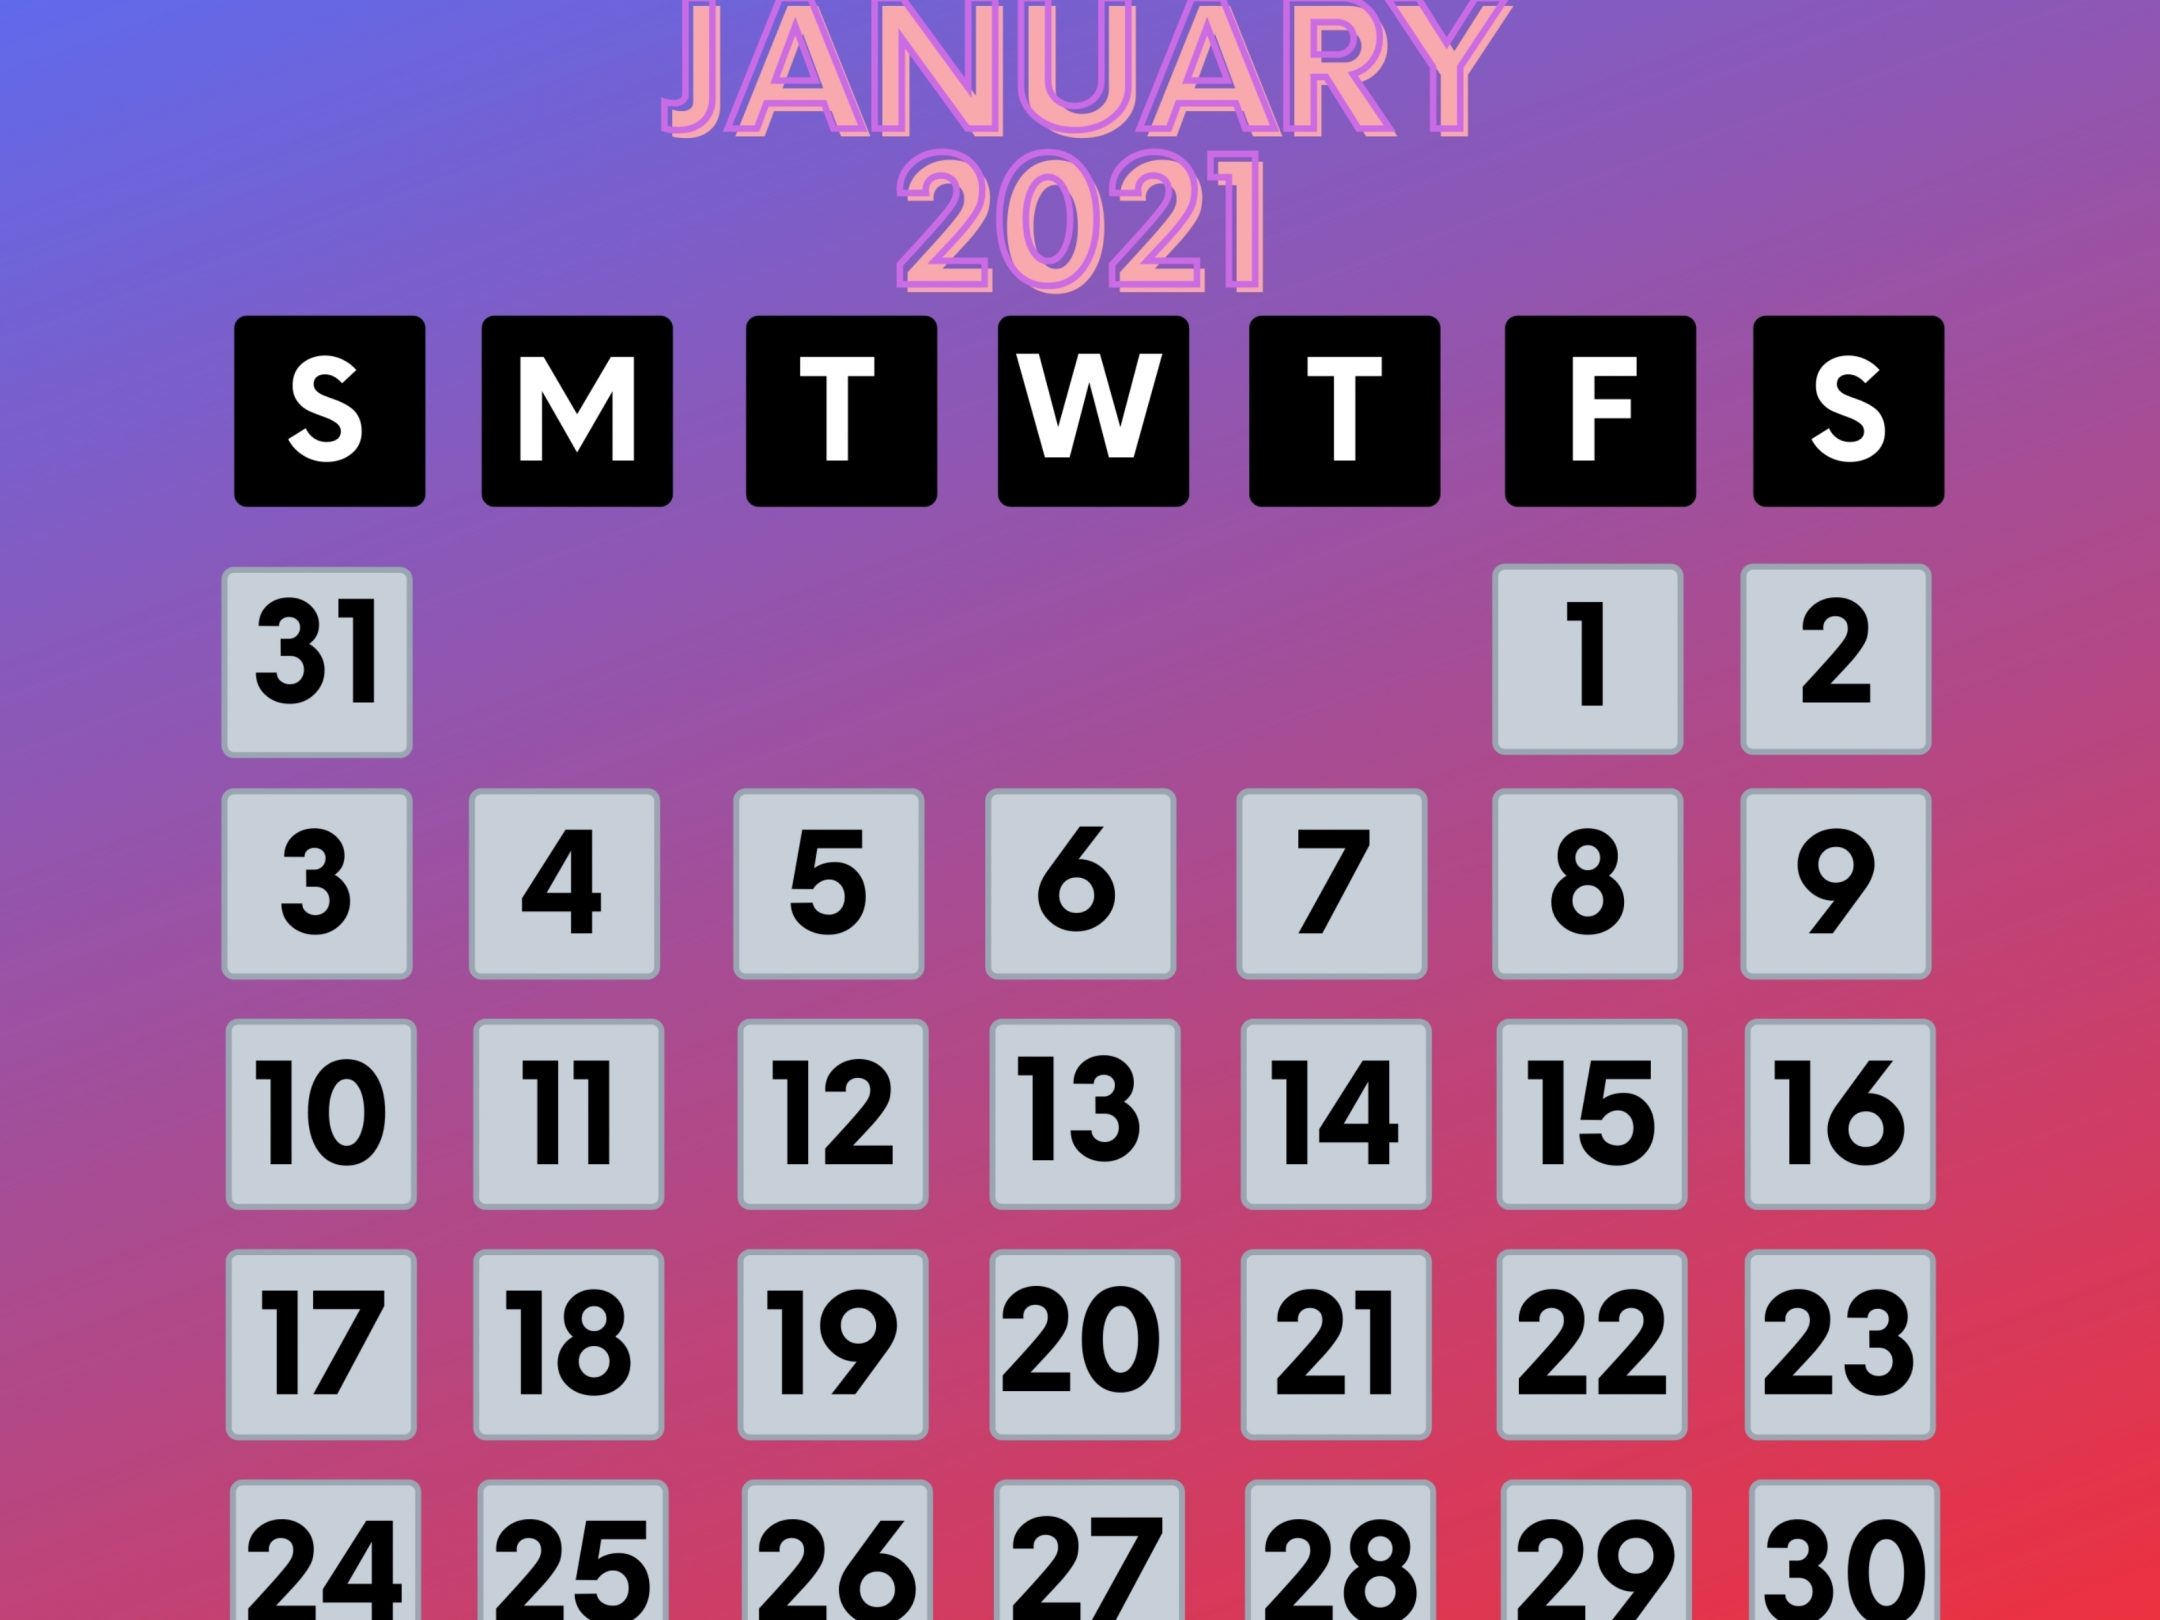 2160x1620 iPad wallpaper 4k January 2021 Calendar iPad Wallpaper 2160x1620 pixels resolution